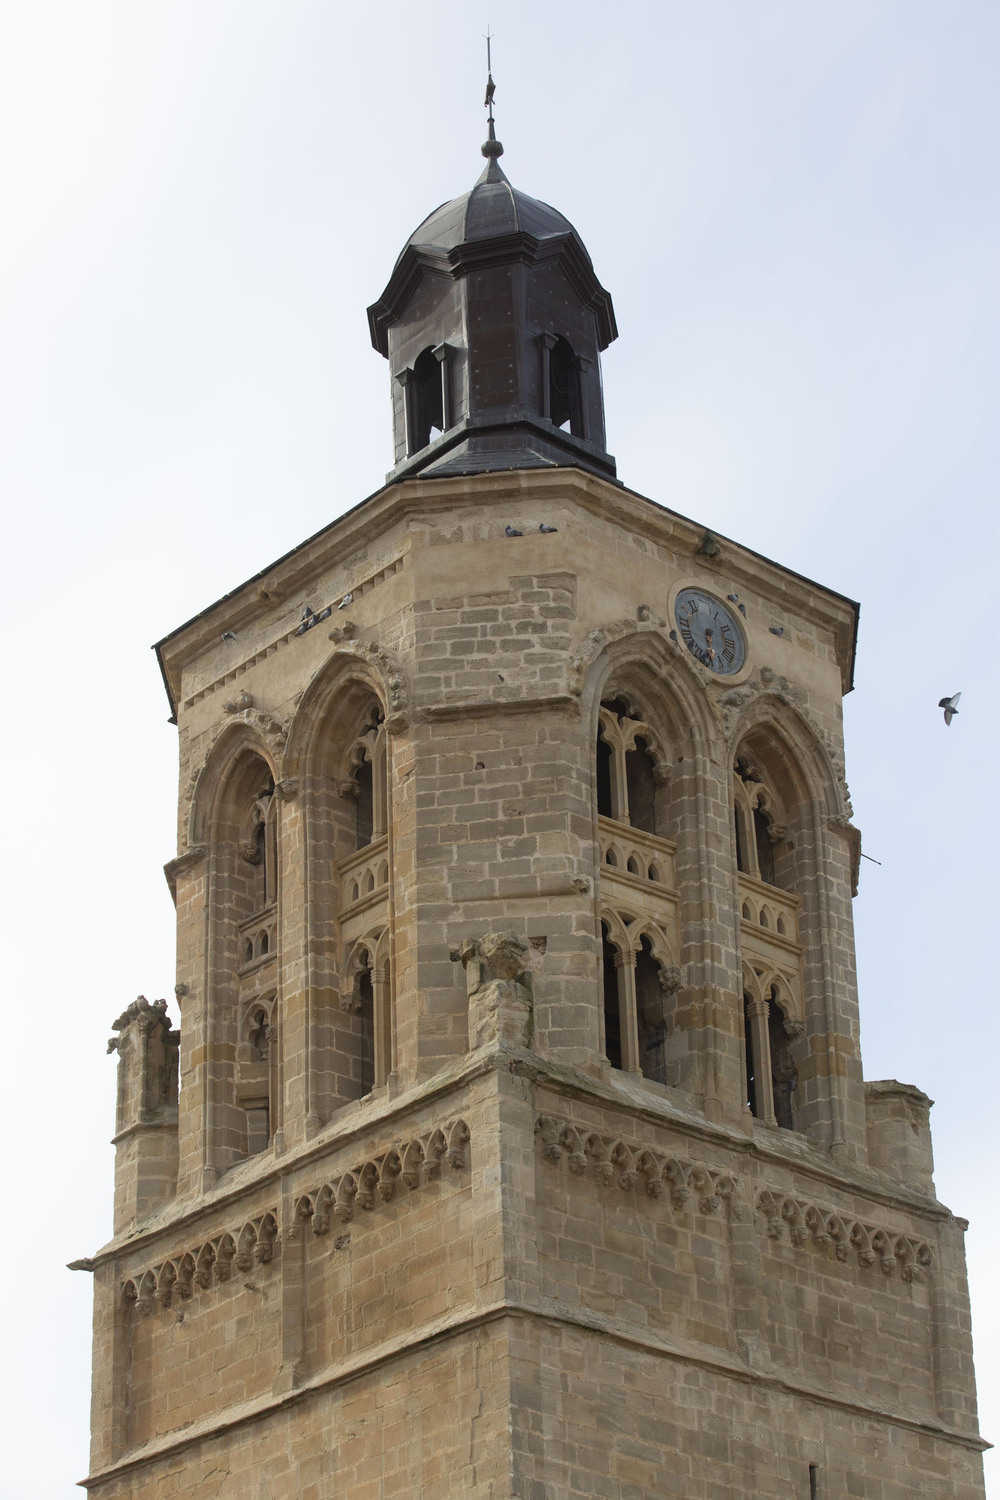 Diferentes vistas y detalles de la iglesia de la Virgen de la Asunción de Alcocer.